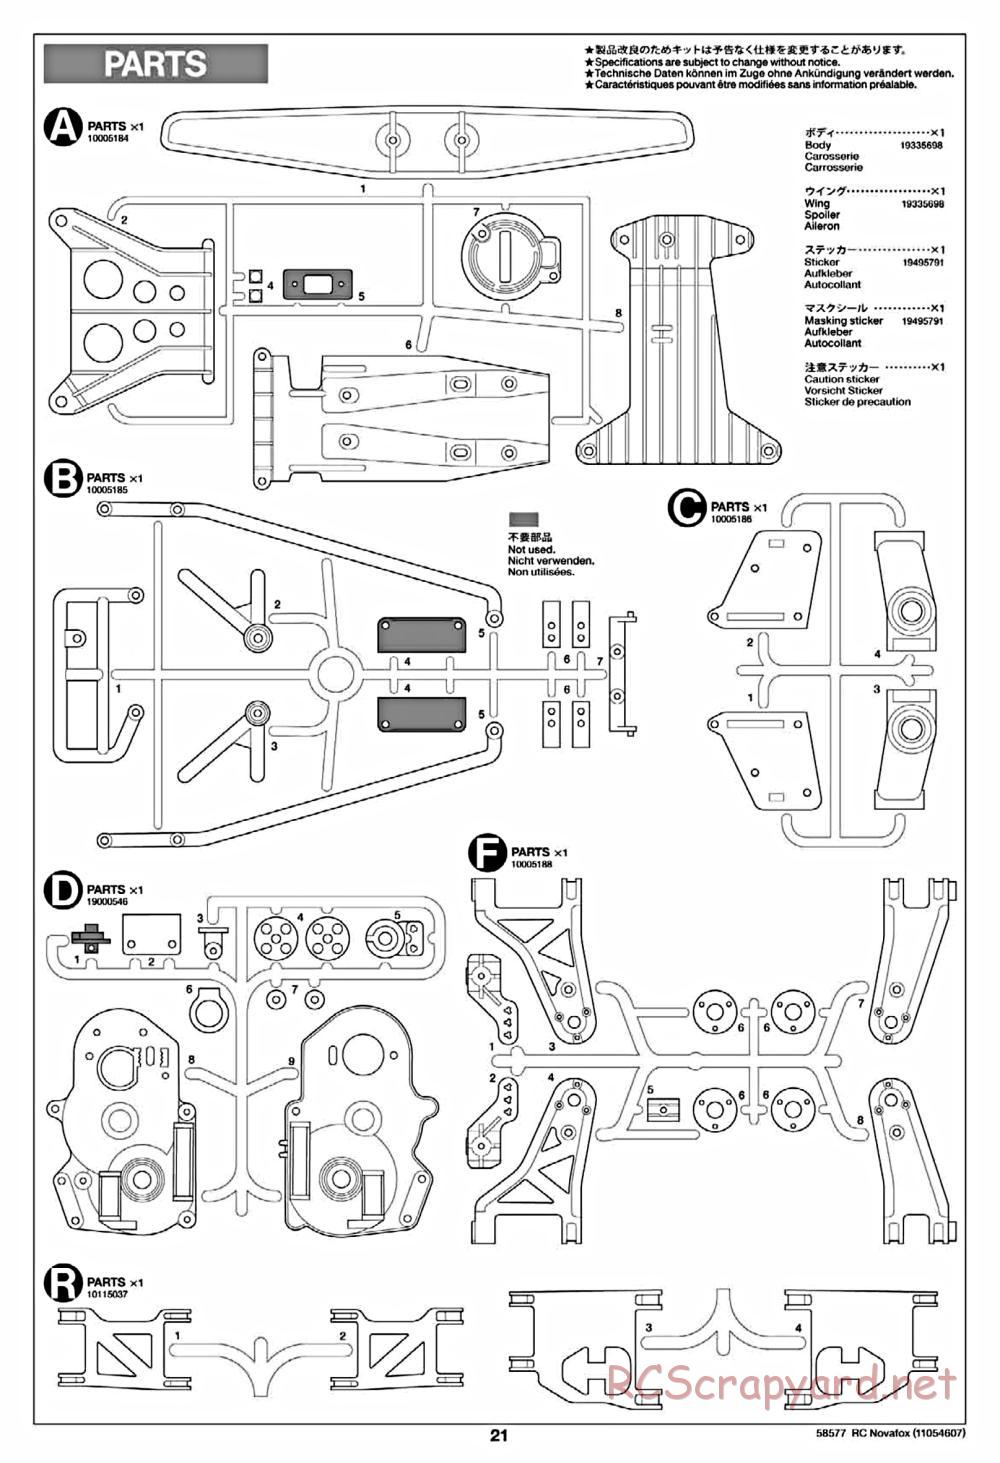 Tamiya - Novafox Chassis - Manual - Page 21